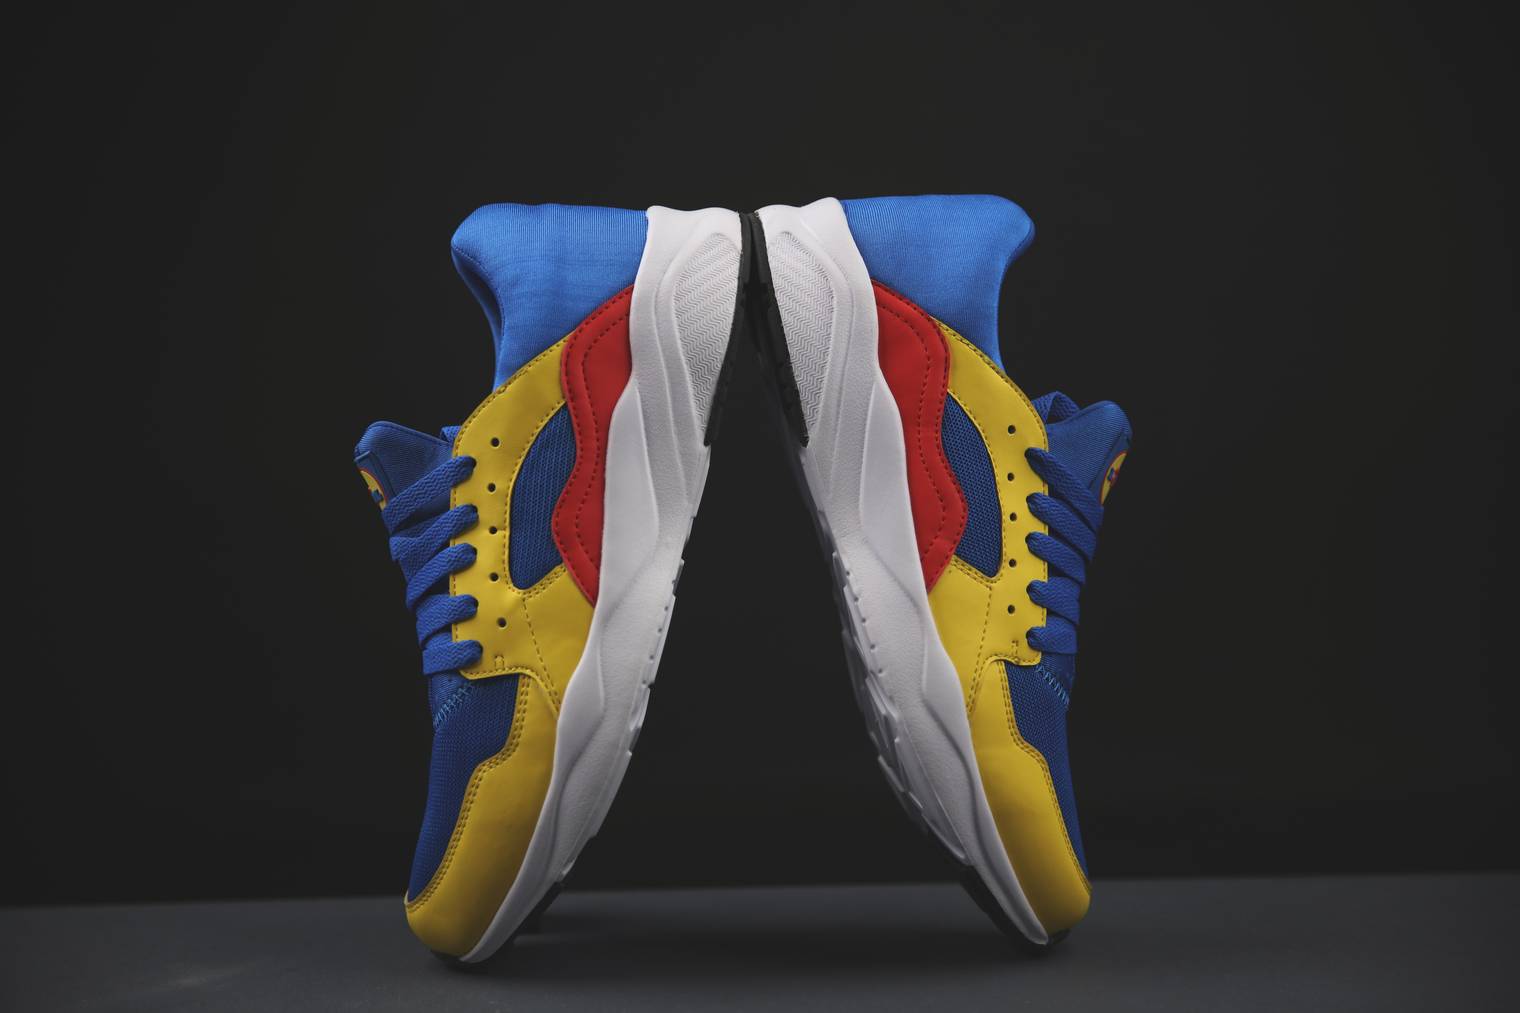 Rot, blau und gelb: Der Sneaker von Lidl fällt auf.